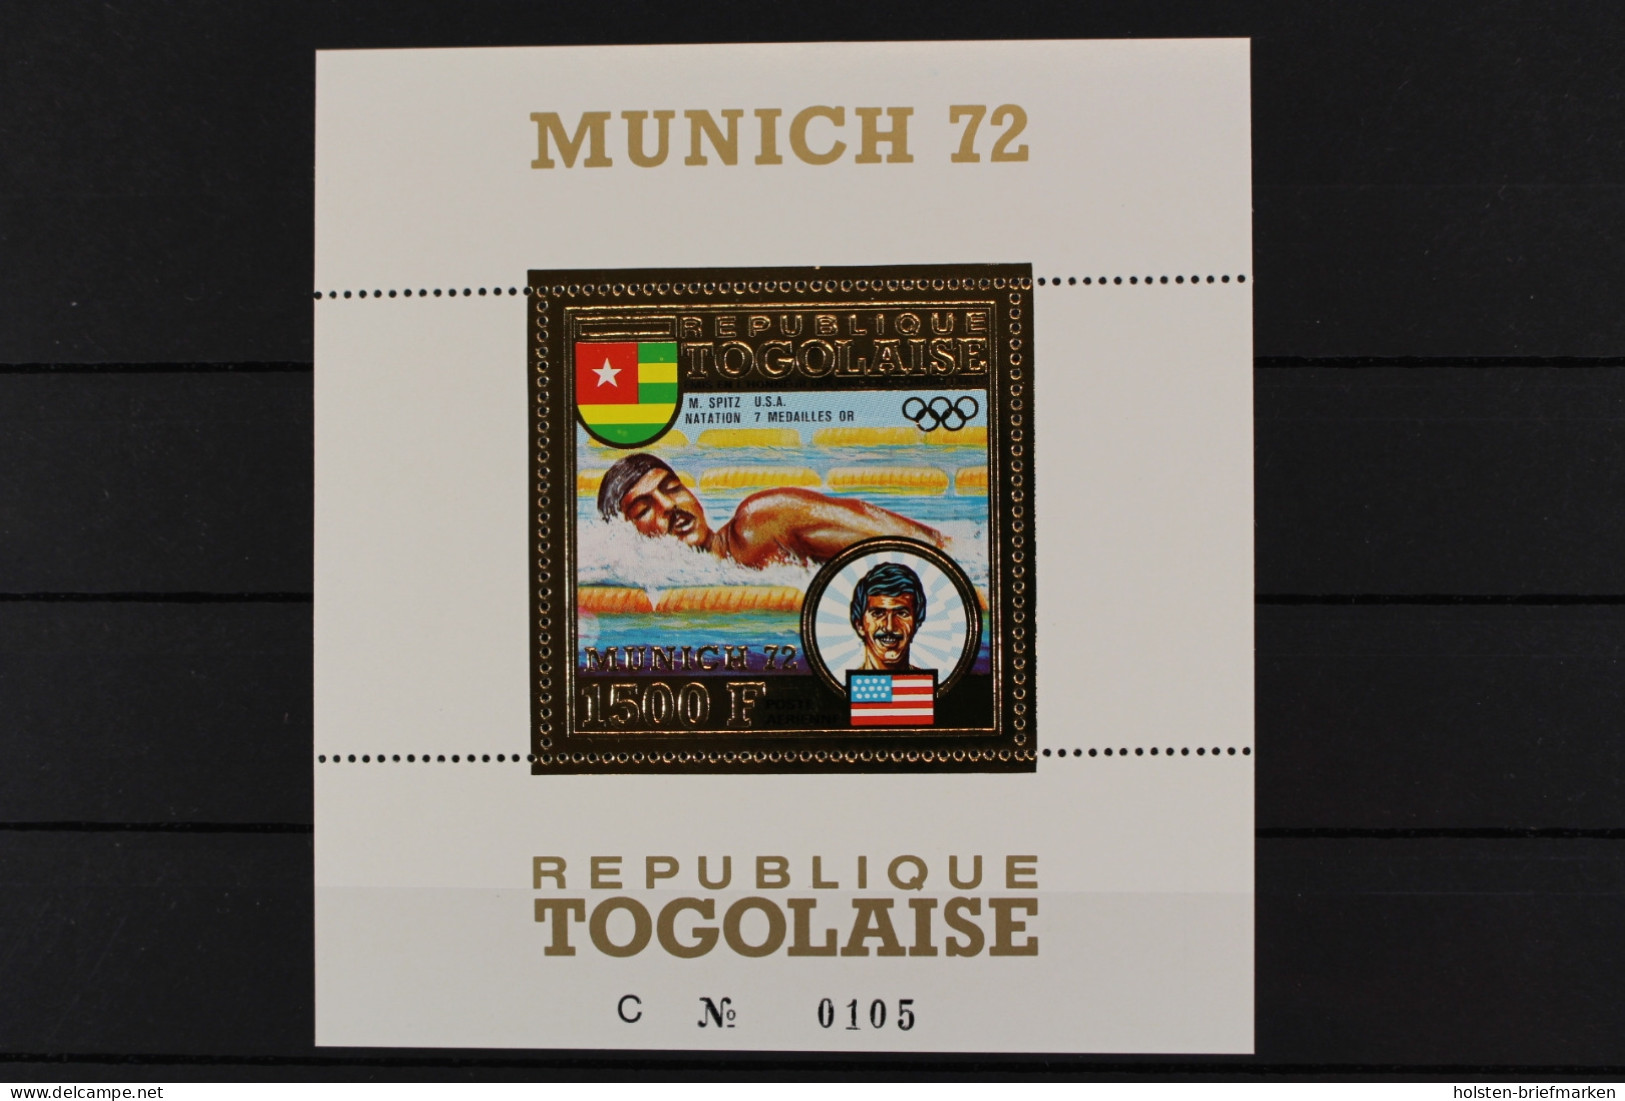 Togo, MiNr. Block 70, Postfrisch - Togo (1960-...)